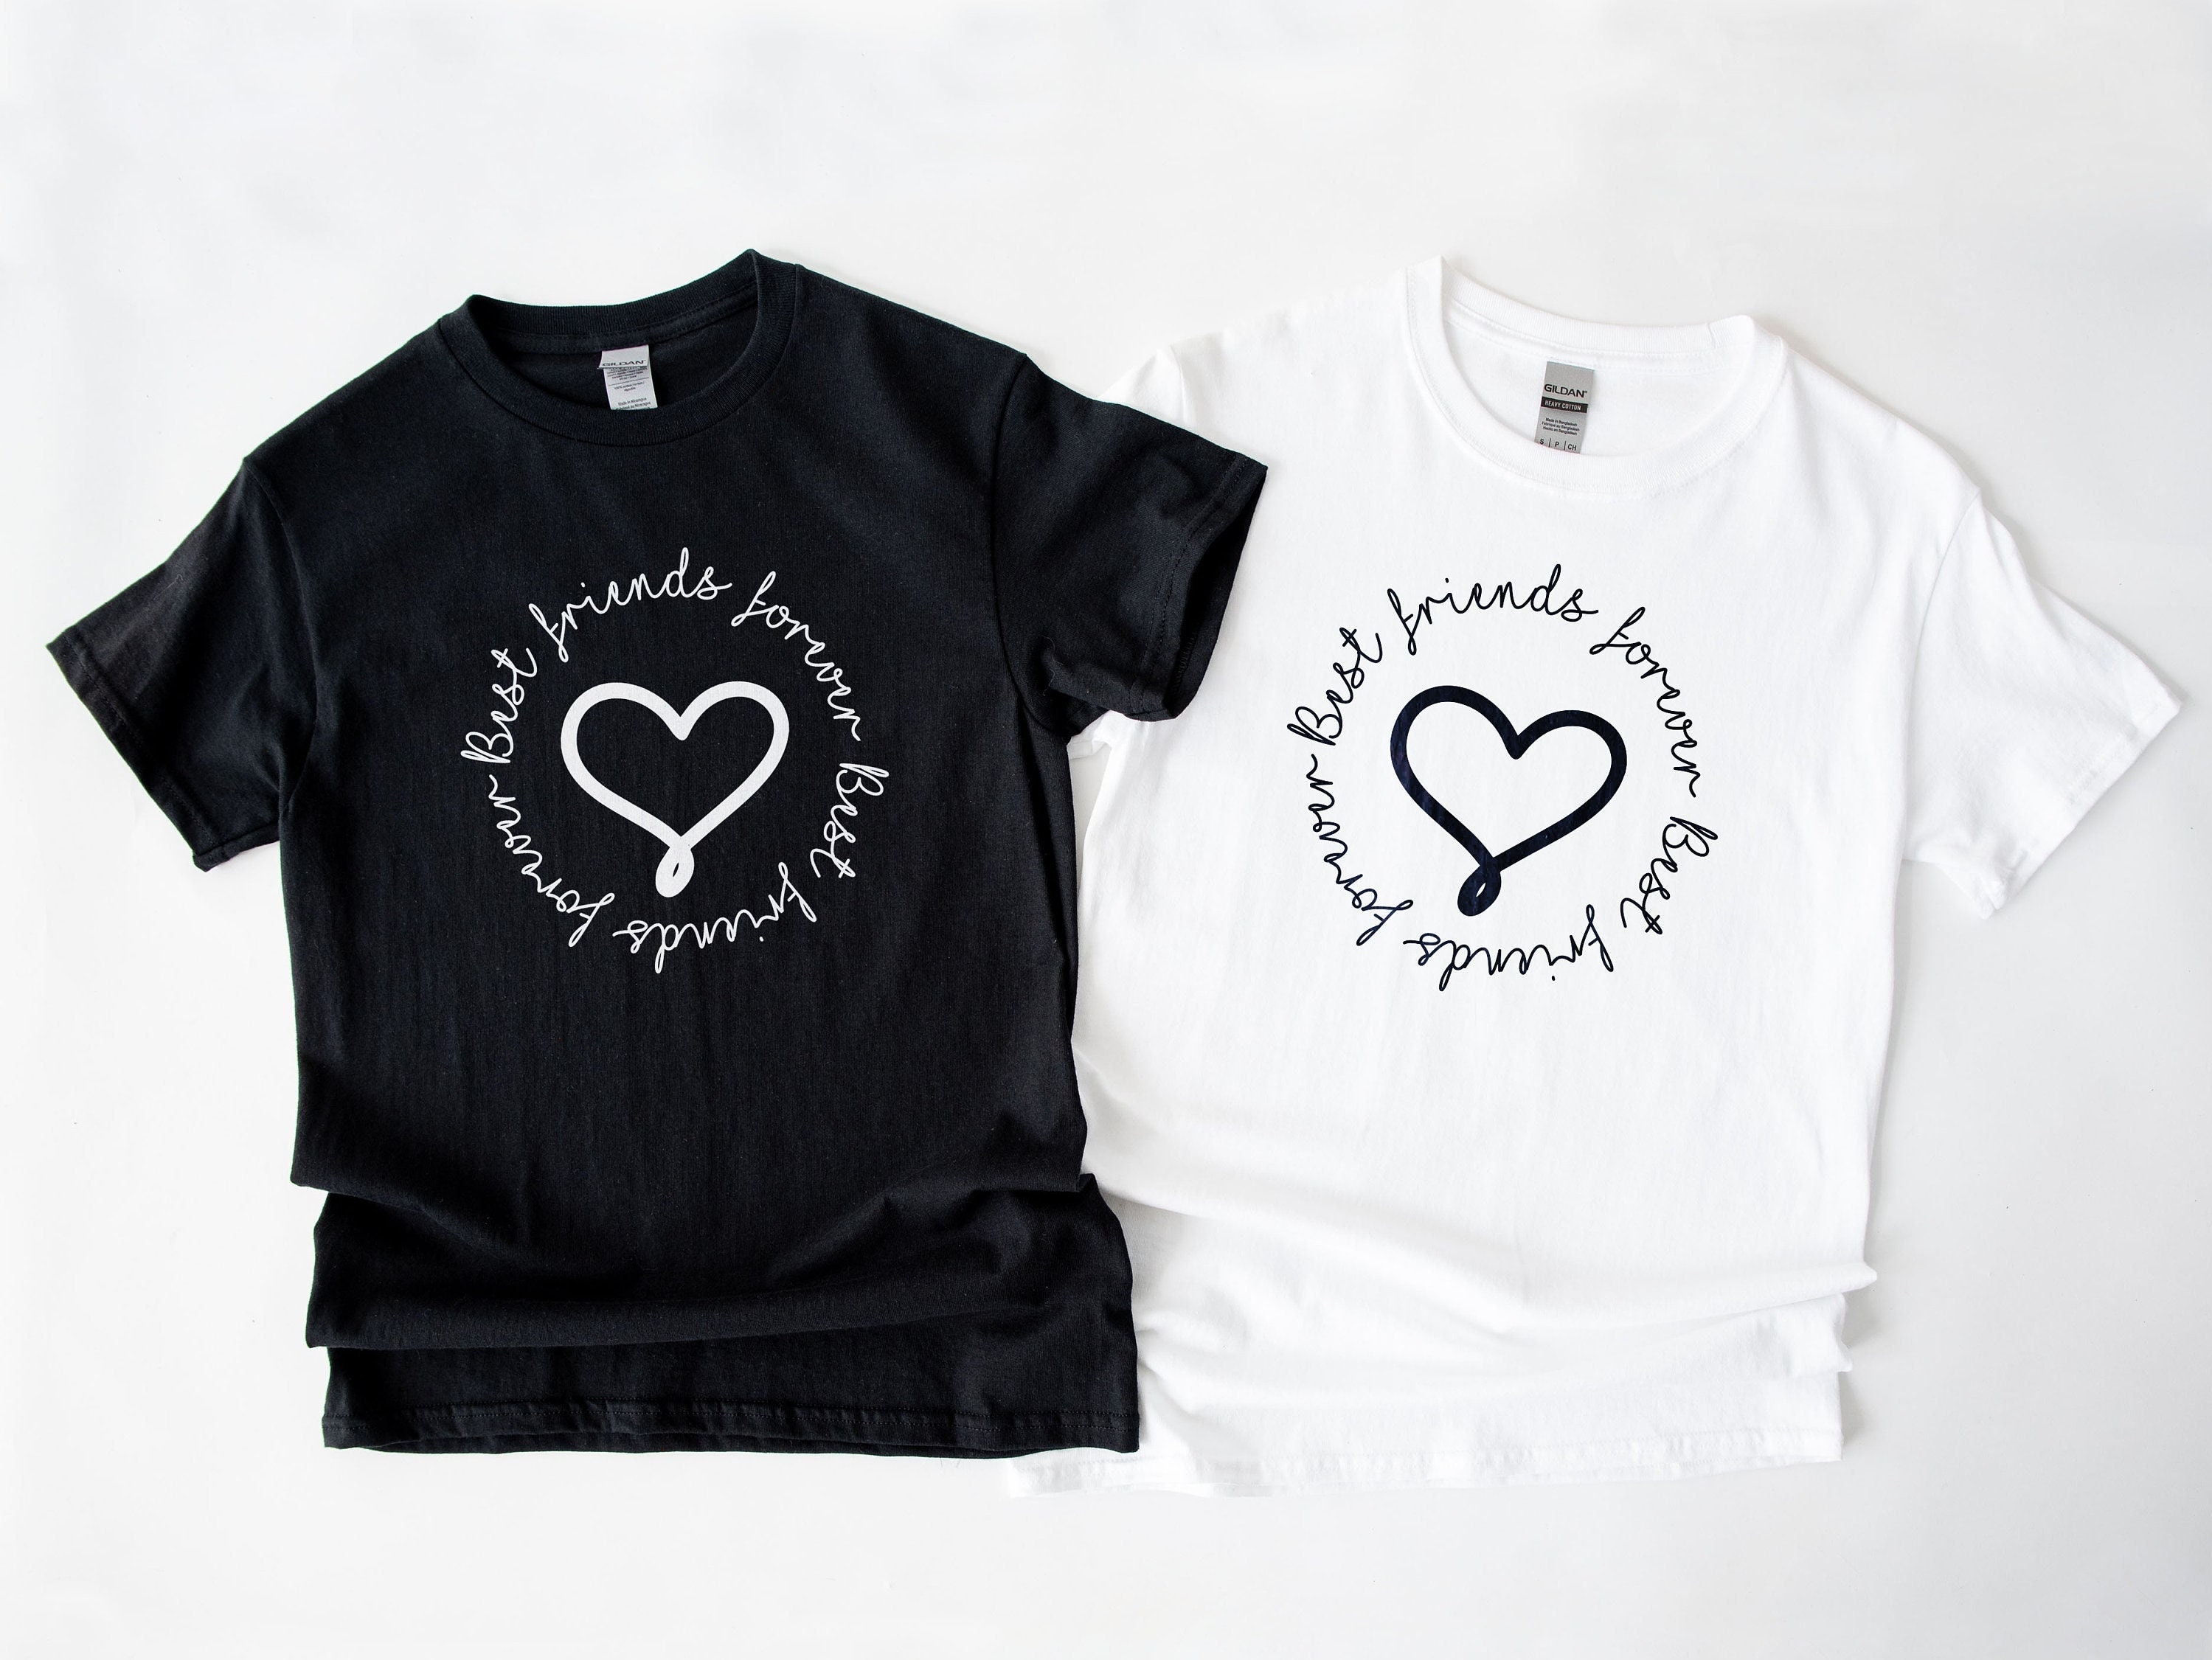 Mejores para siempre camisetas Mujeres mejores amigos - Etsy